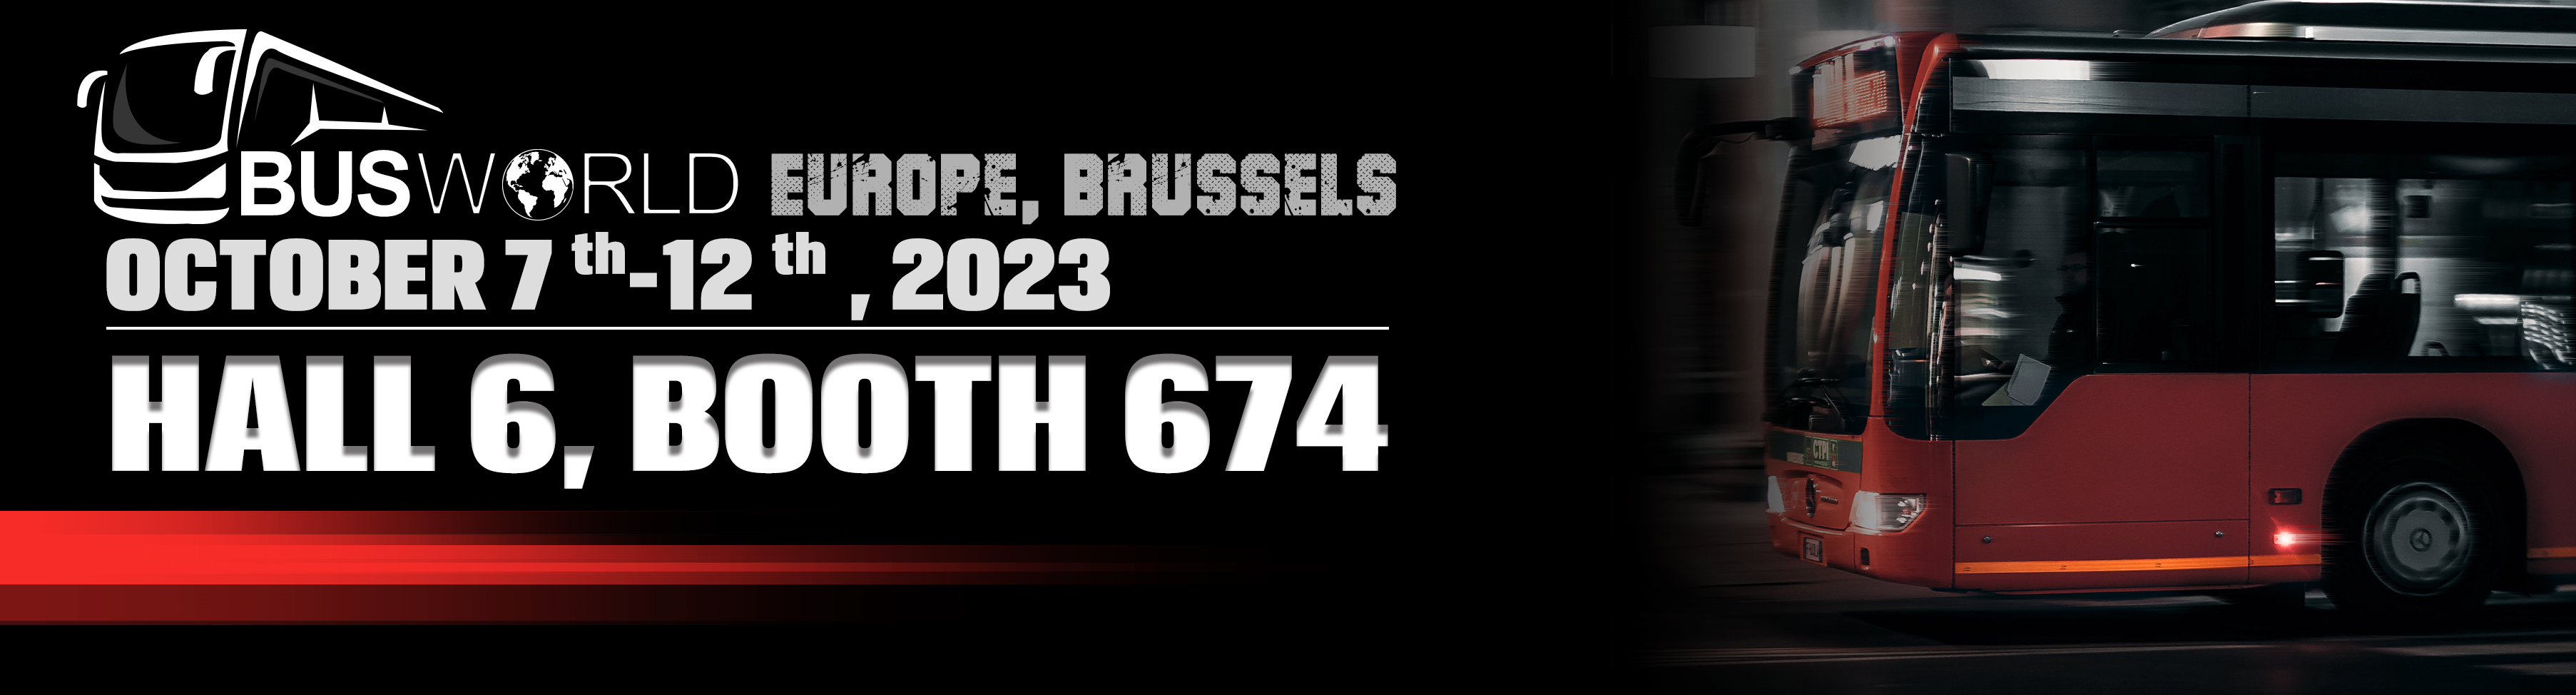 Busworld Europe, Bruksel 2023